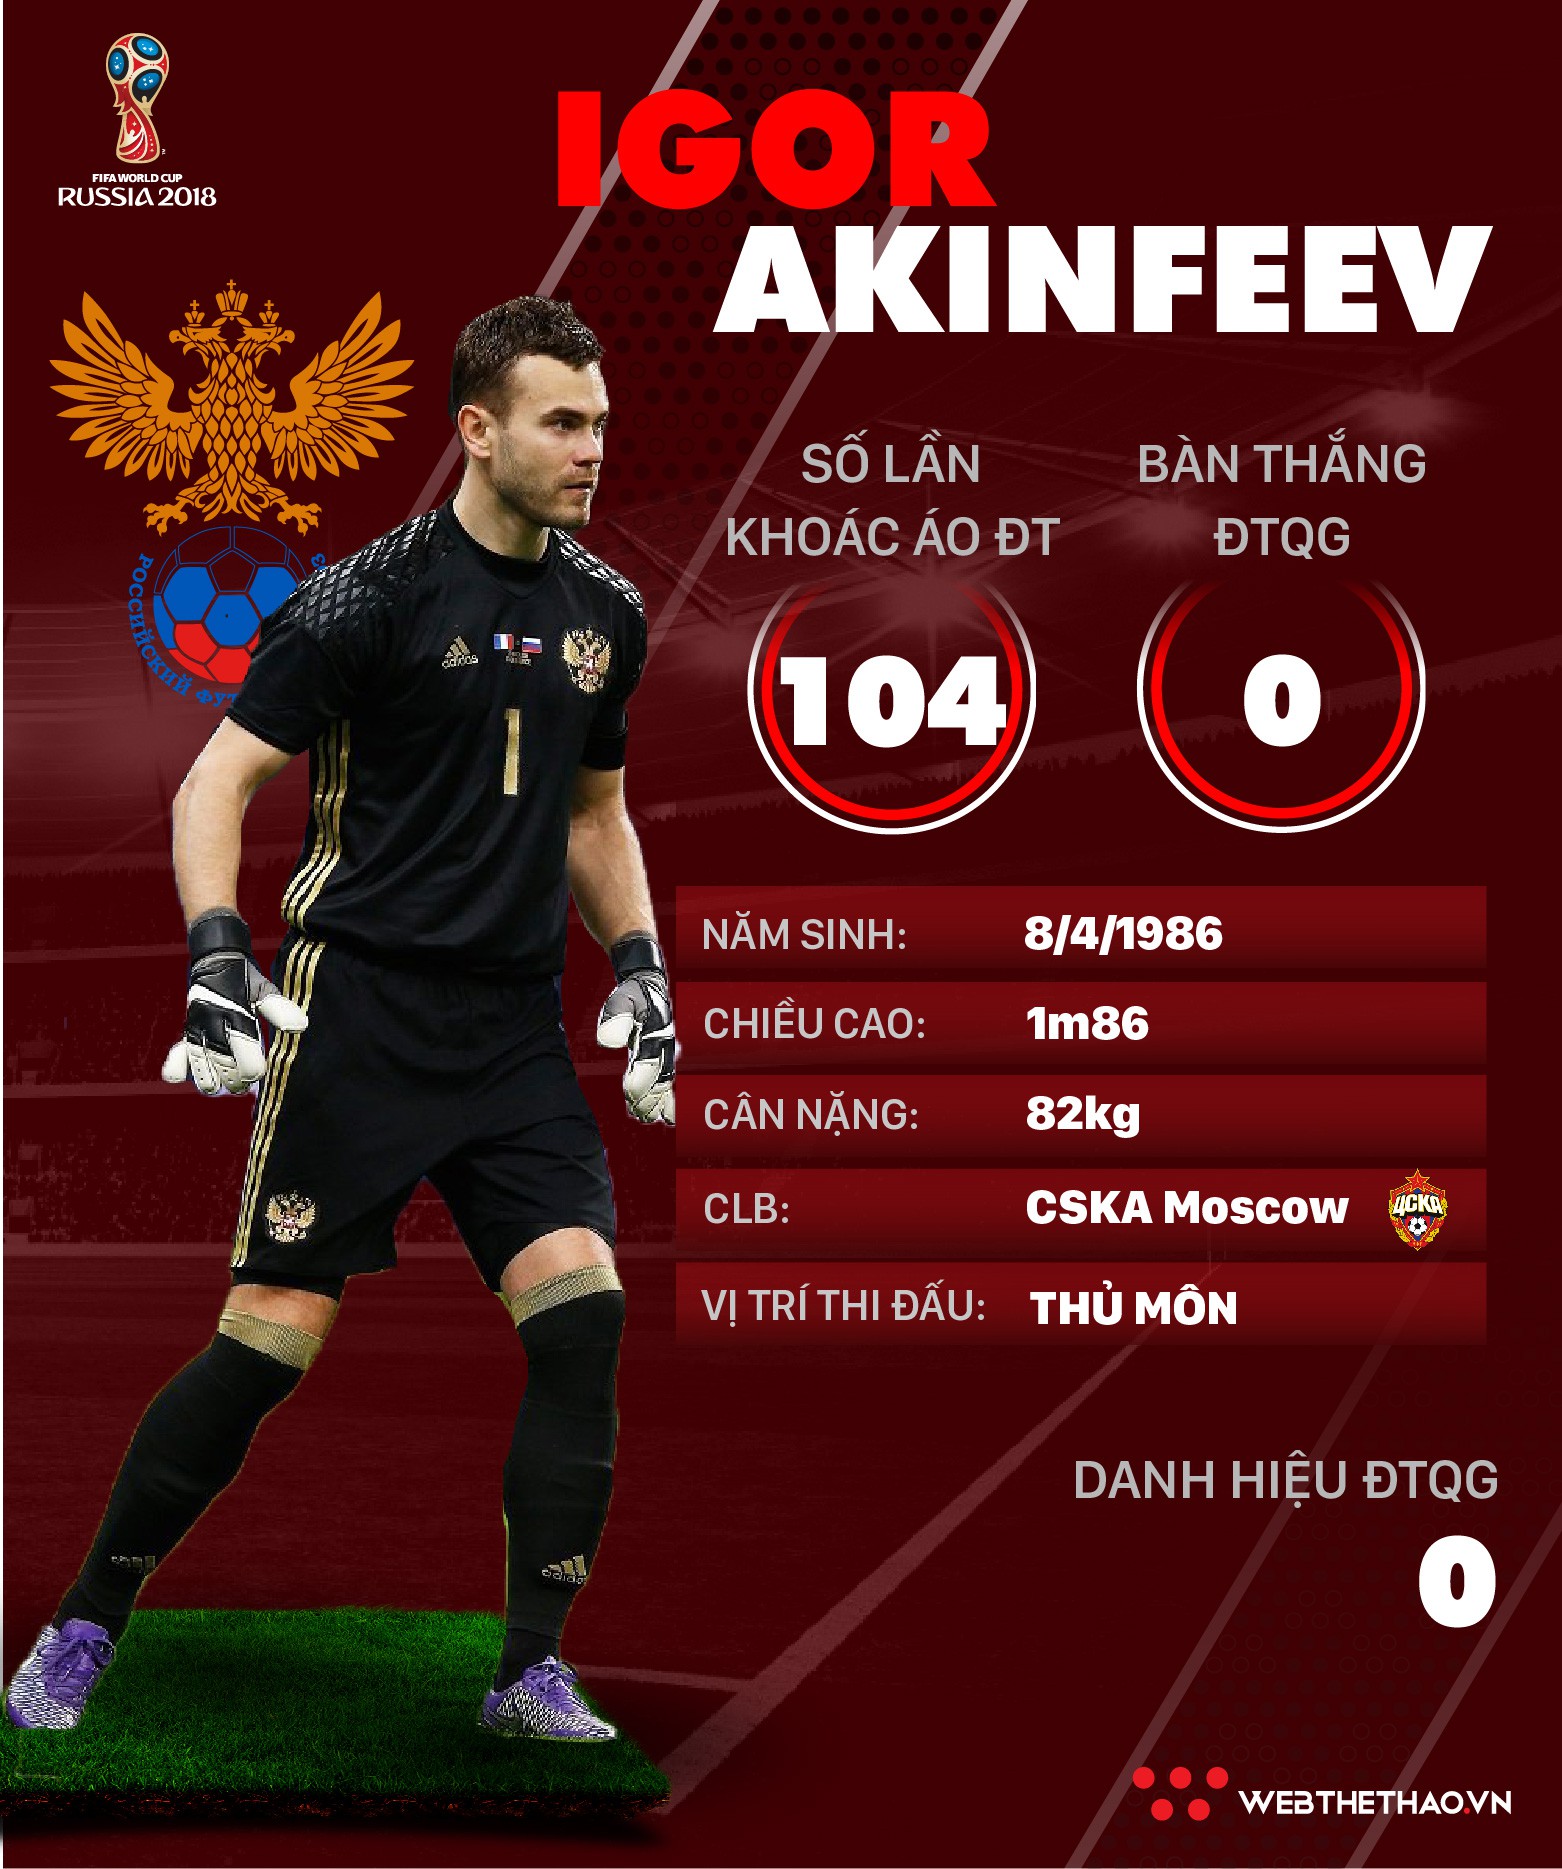 Thông tin cầu thủ Igor Akinfeev của ĐT Nga dự World Cup 2018 - Ảnh 1.